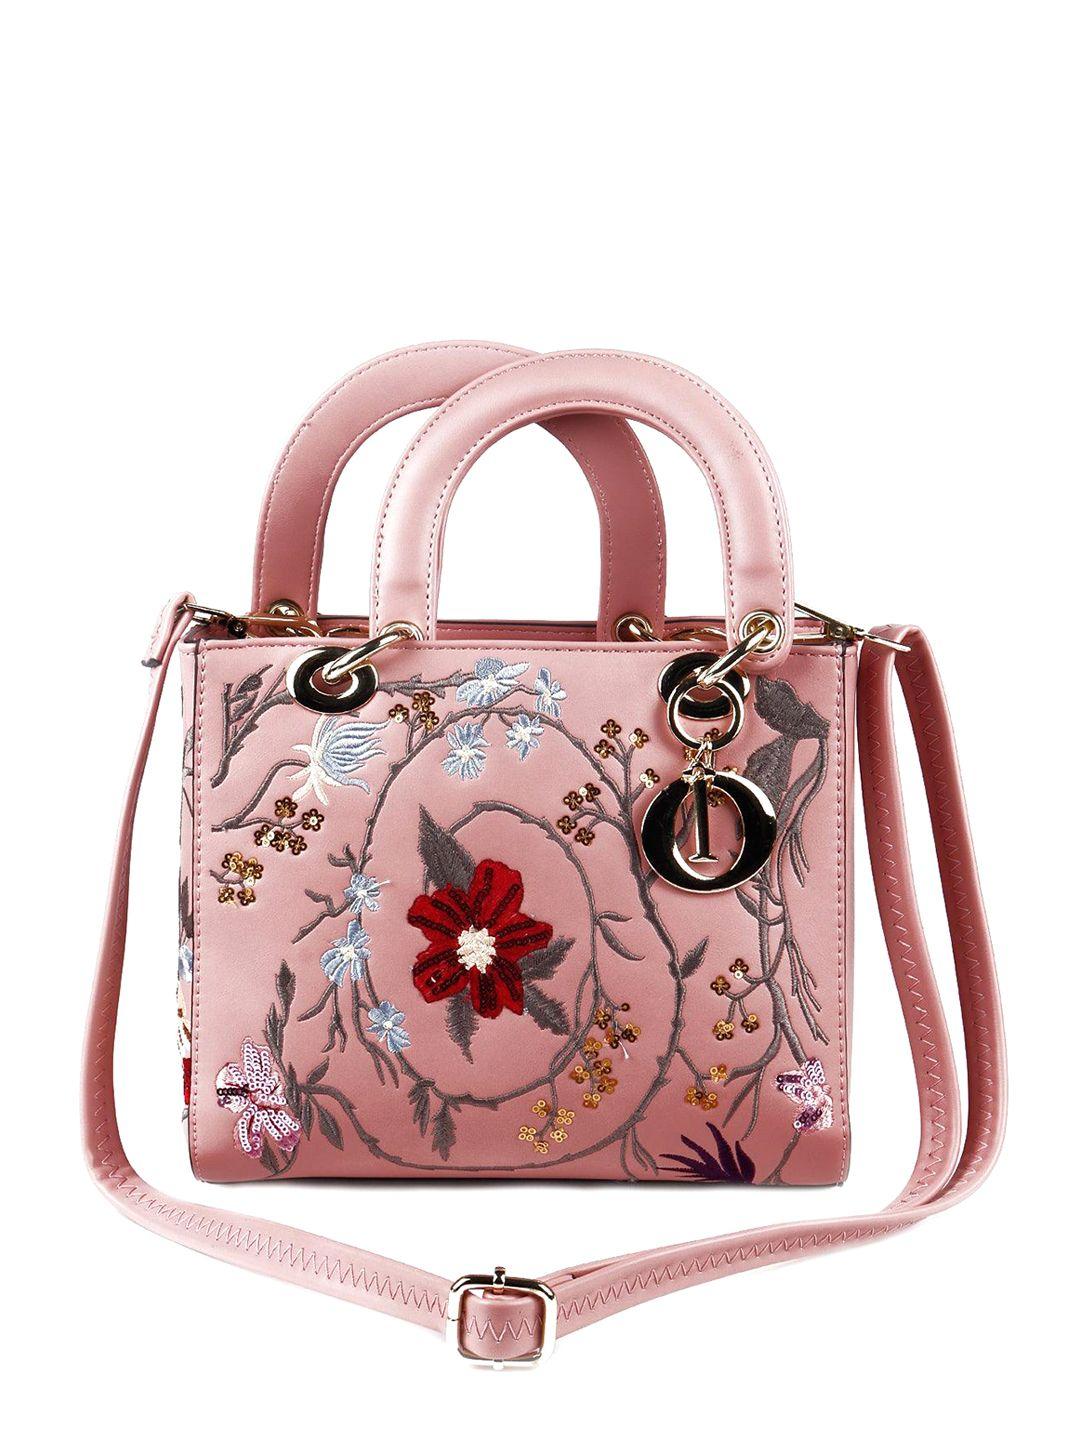 odette floral embroidered leather structured handheld bag